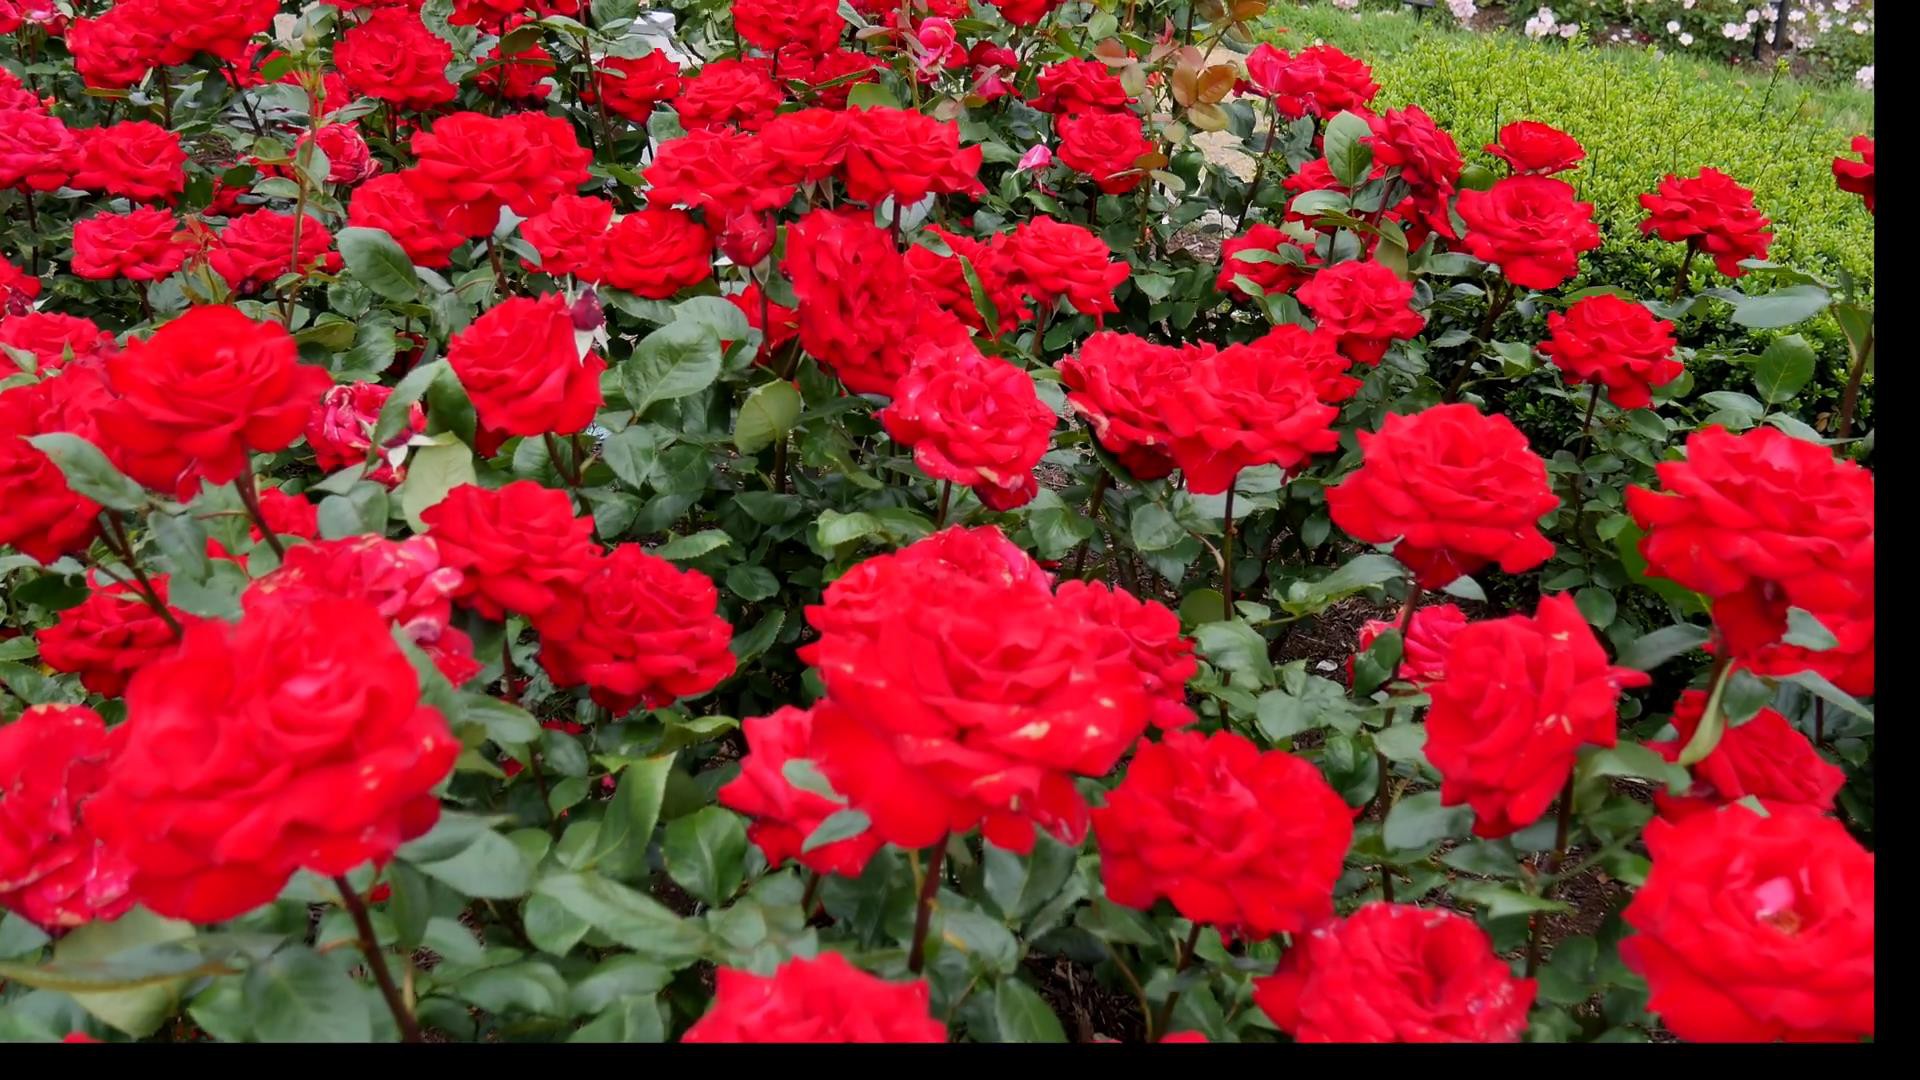 Đến thăm khu vườn trên đảo ở Nhật Bản với 2.600 cây hoa hồng rung rinh trước gió đẹp mê mẩn lòng người - Ảnh 9.